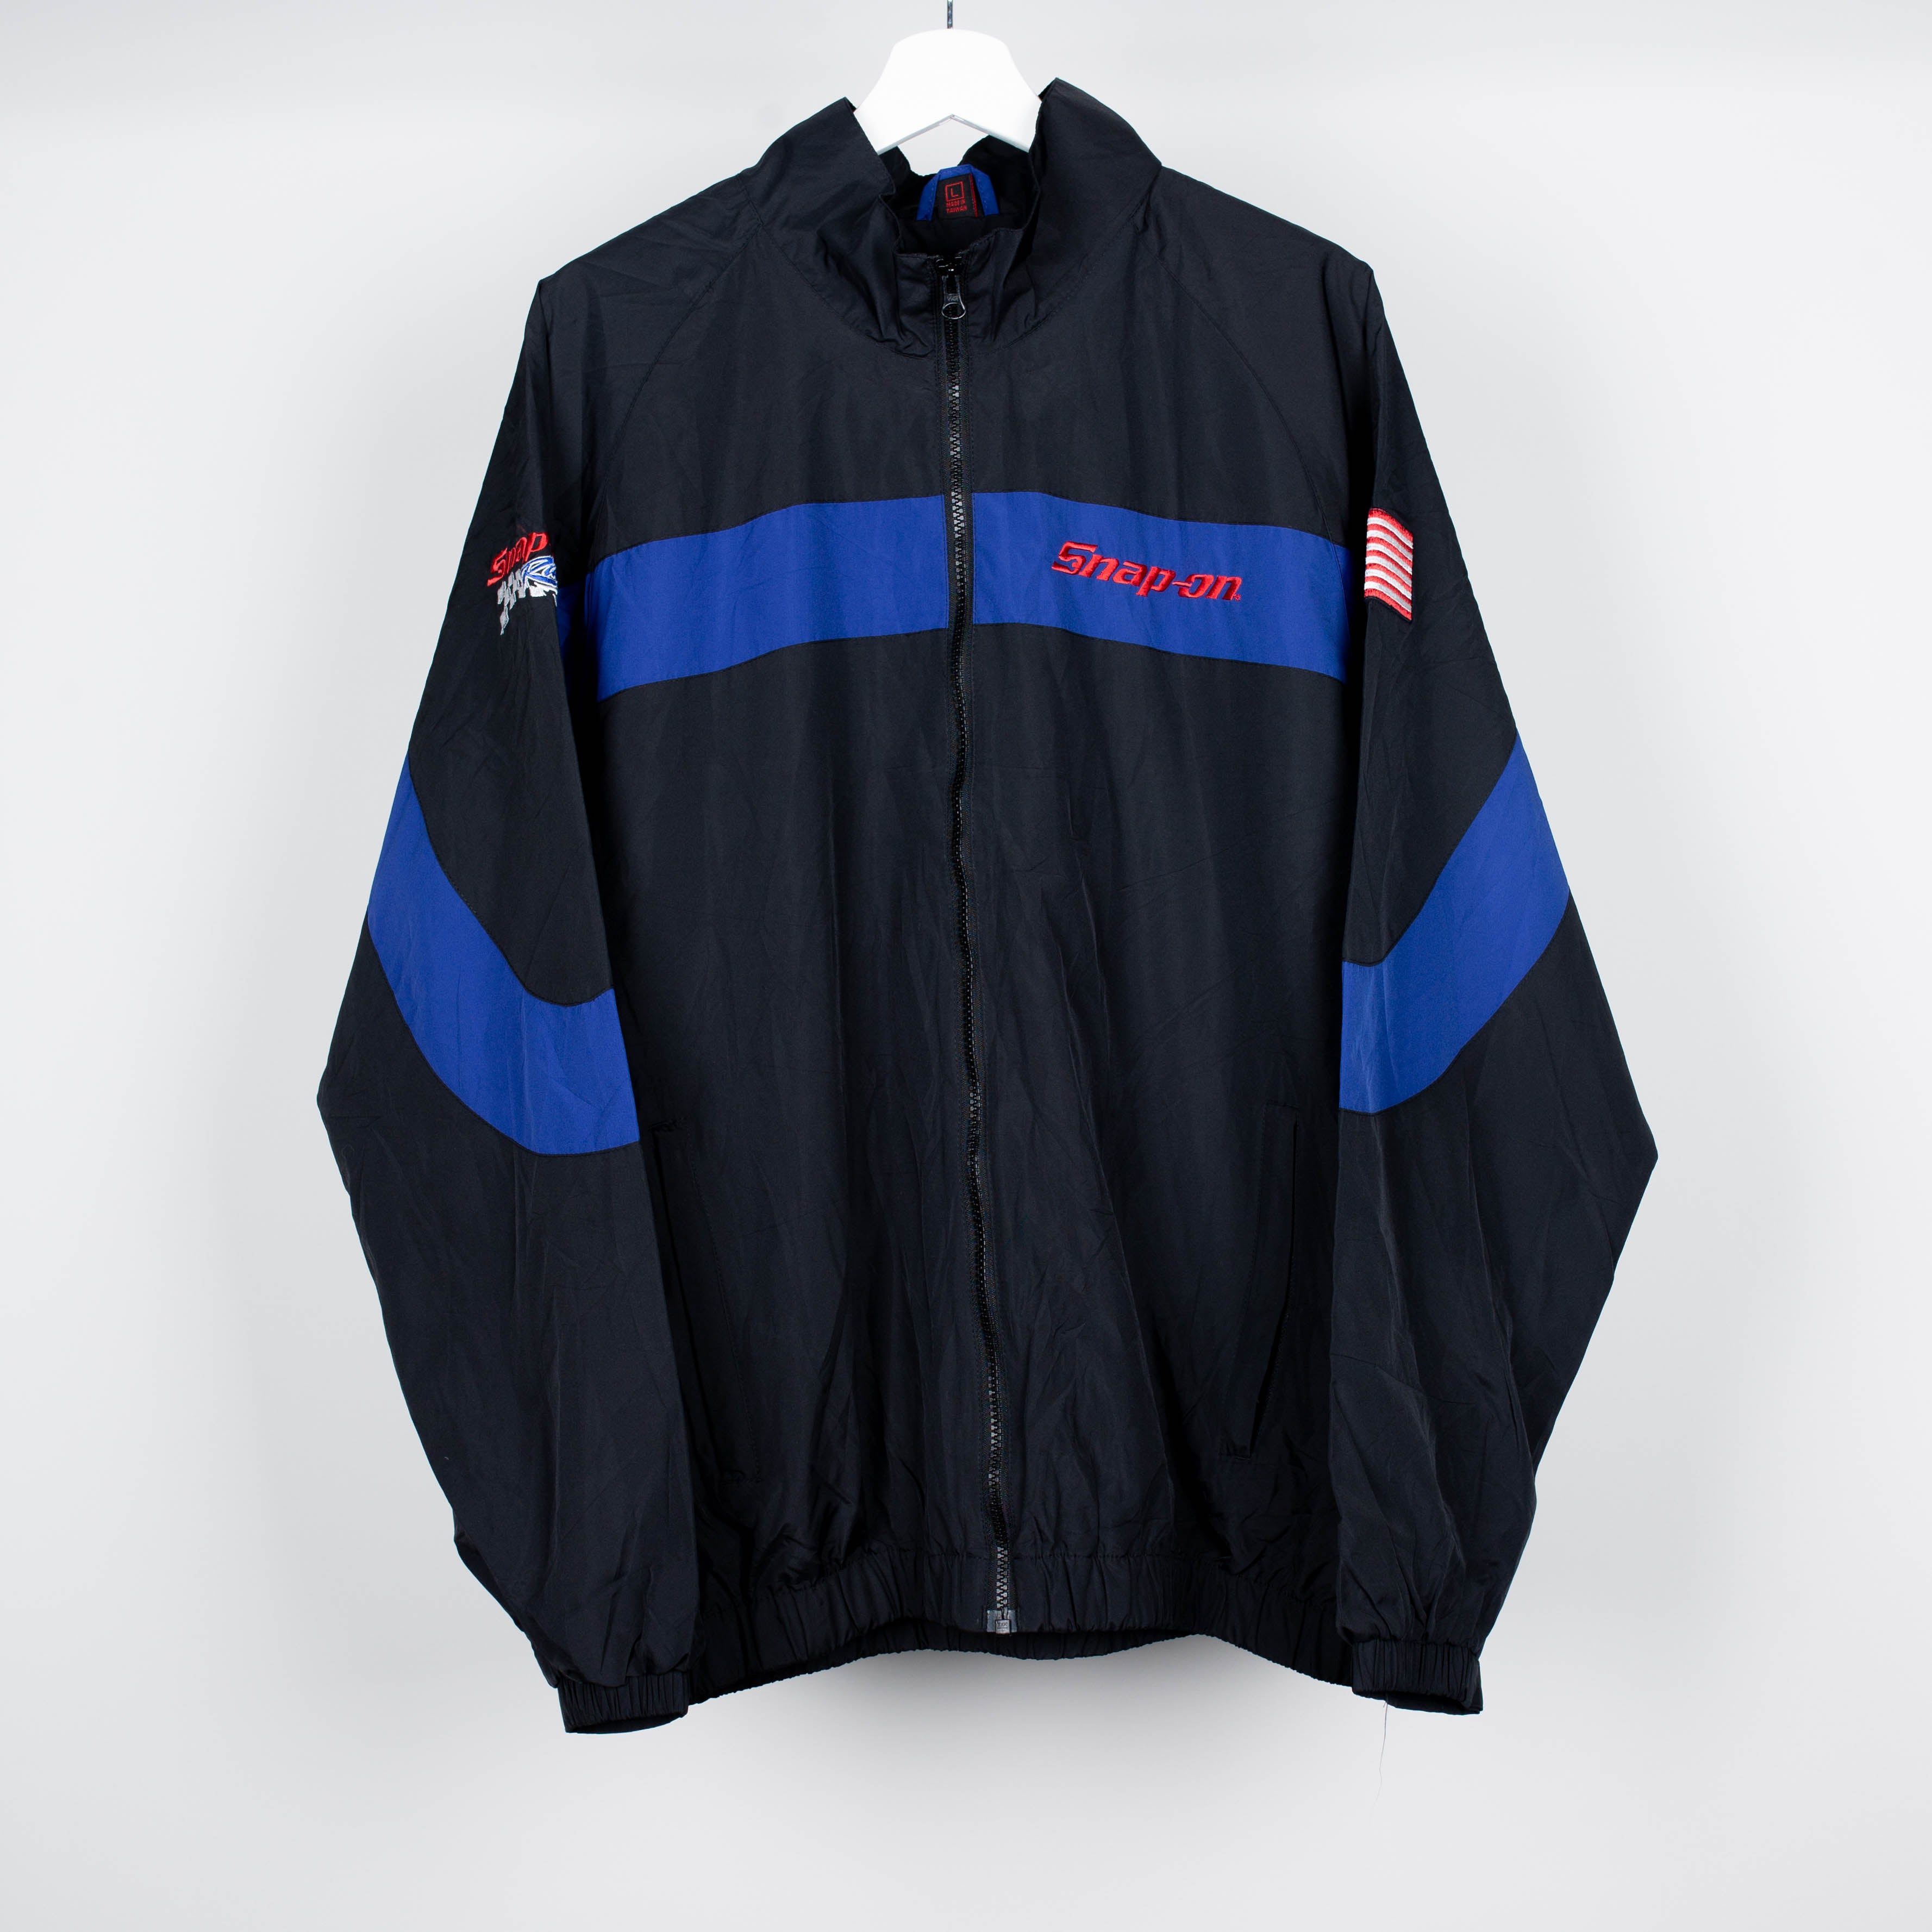 90's Snap-On Racing Windbreaker Jacket Size L